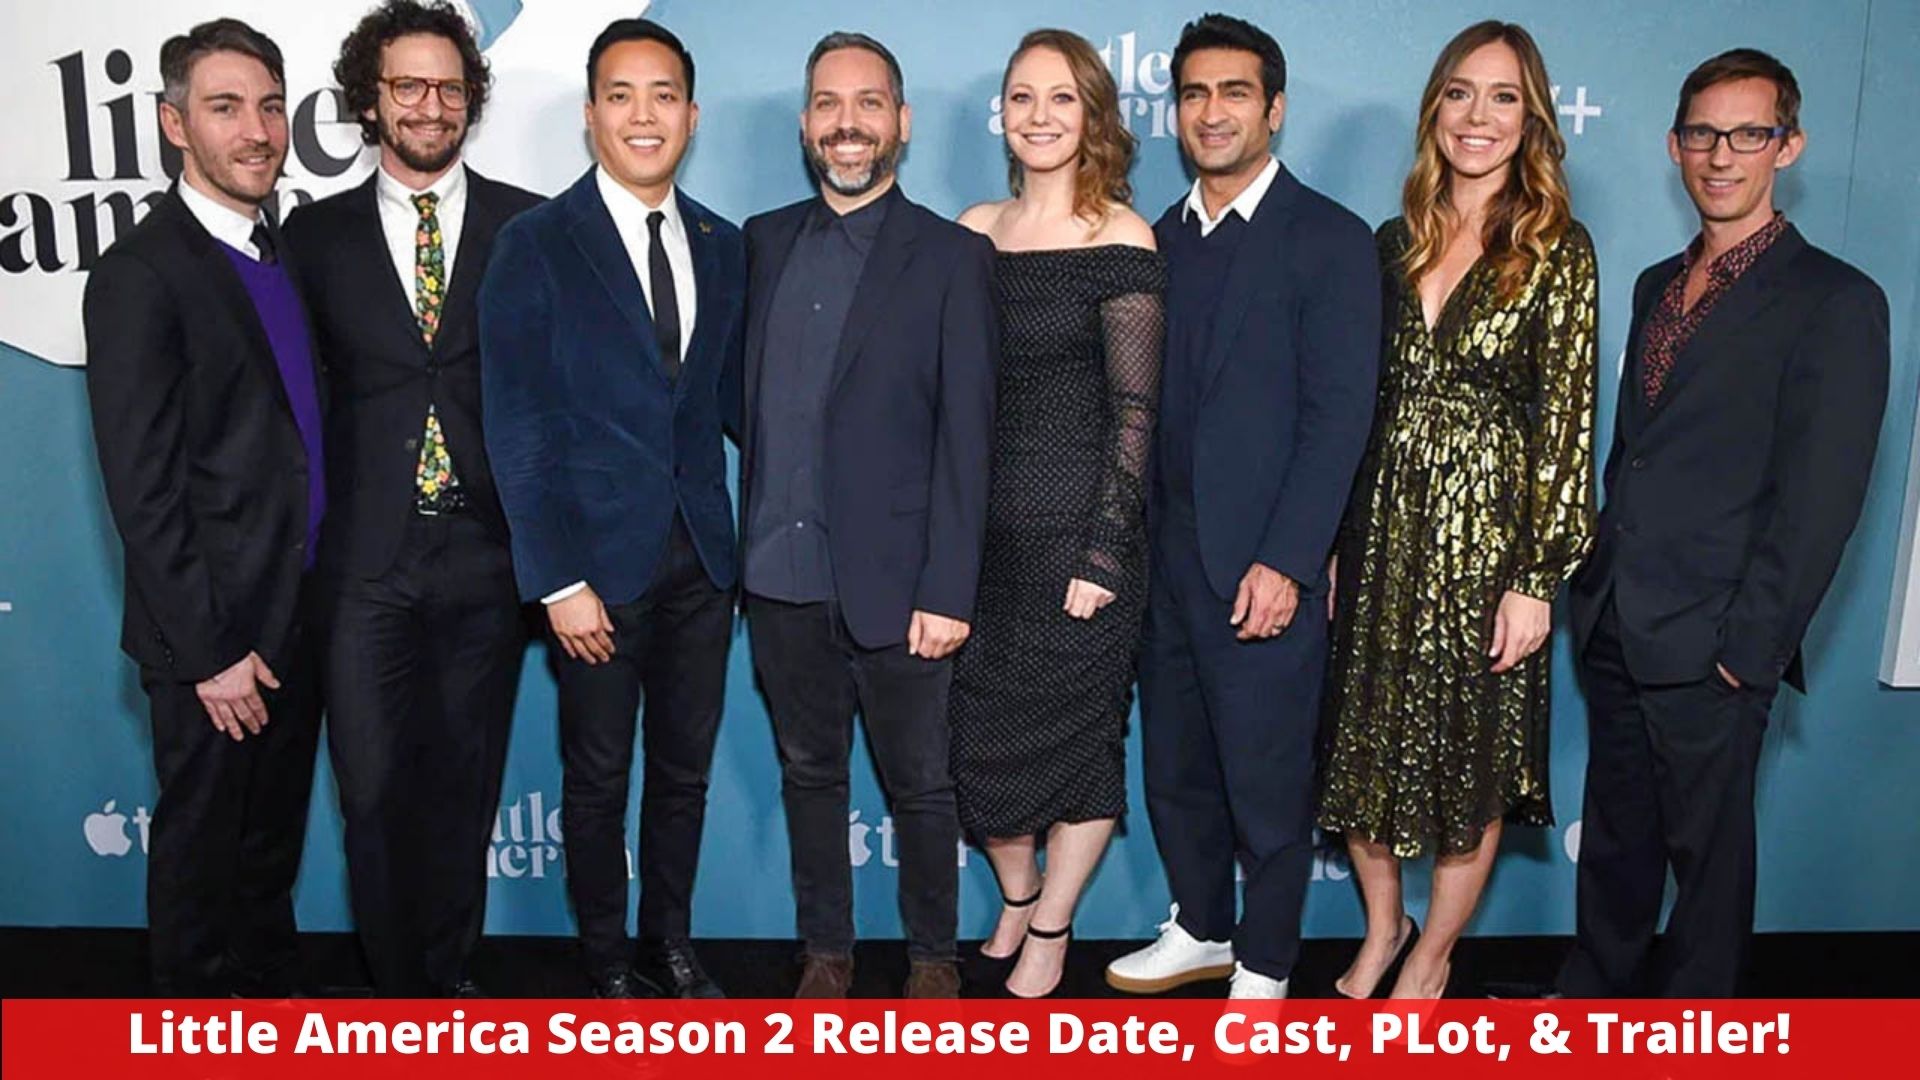 Little America Season 2 Release Date, Cast, PLot, & Trailer!